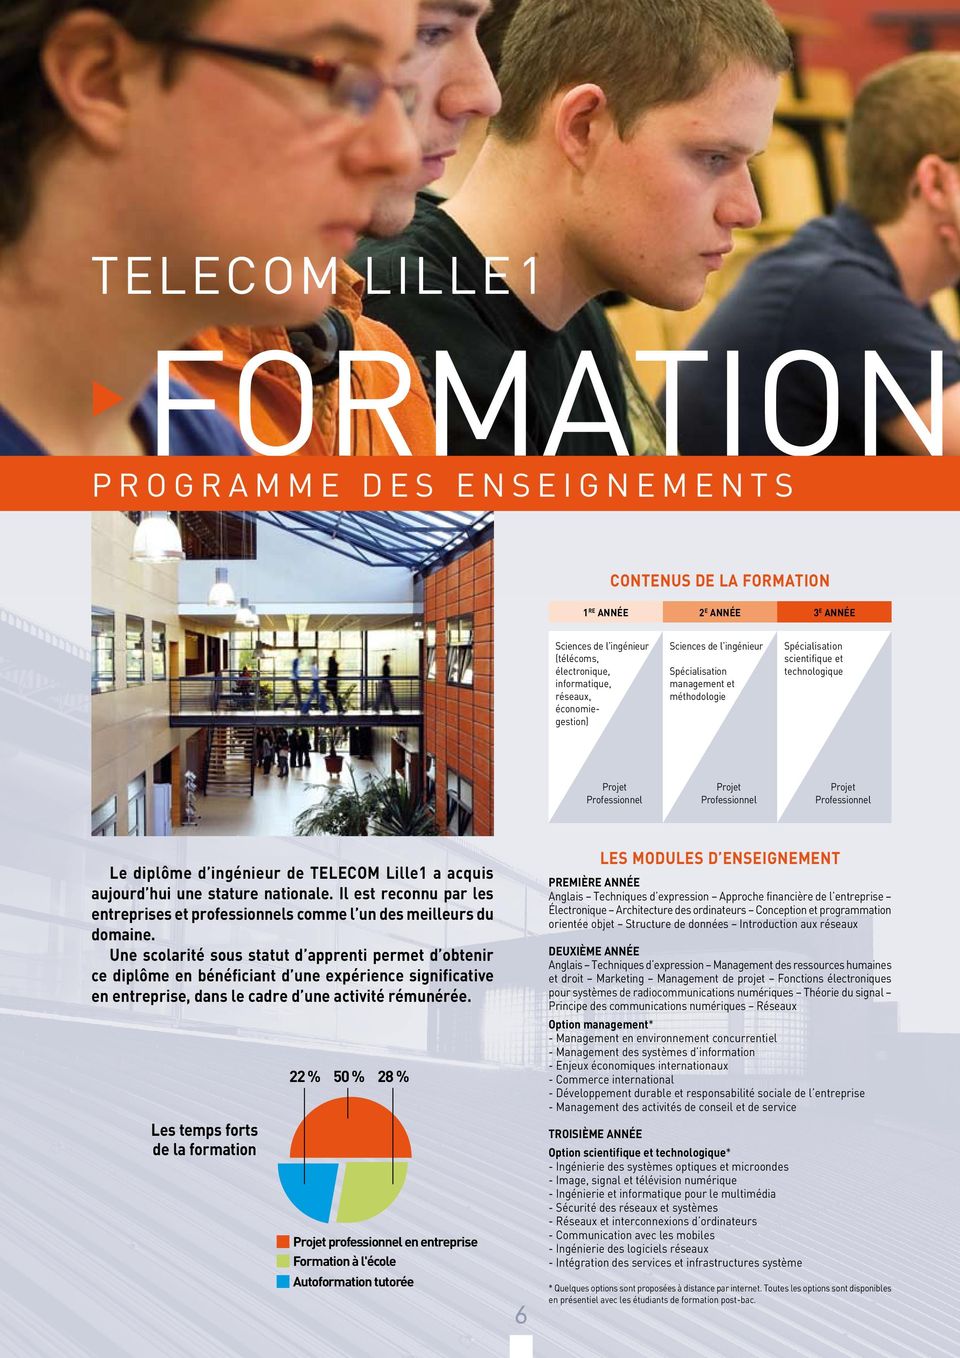 TELECOM Lille1 a acquis aujourd hui une stature nationale. Il est reconnu par les entreprises et professionnels comme l un des meilleurs du domaine.